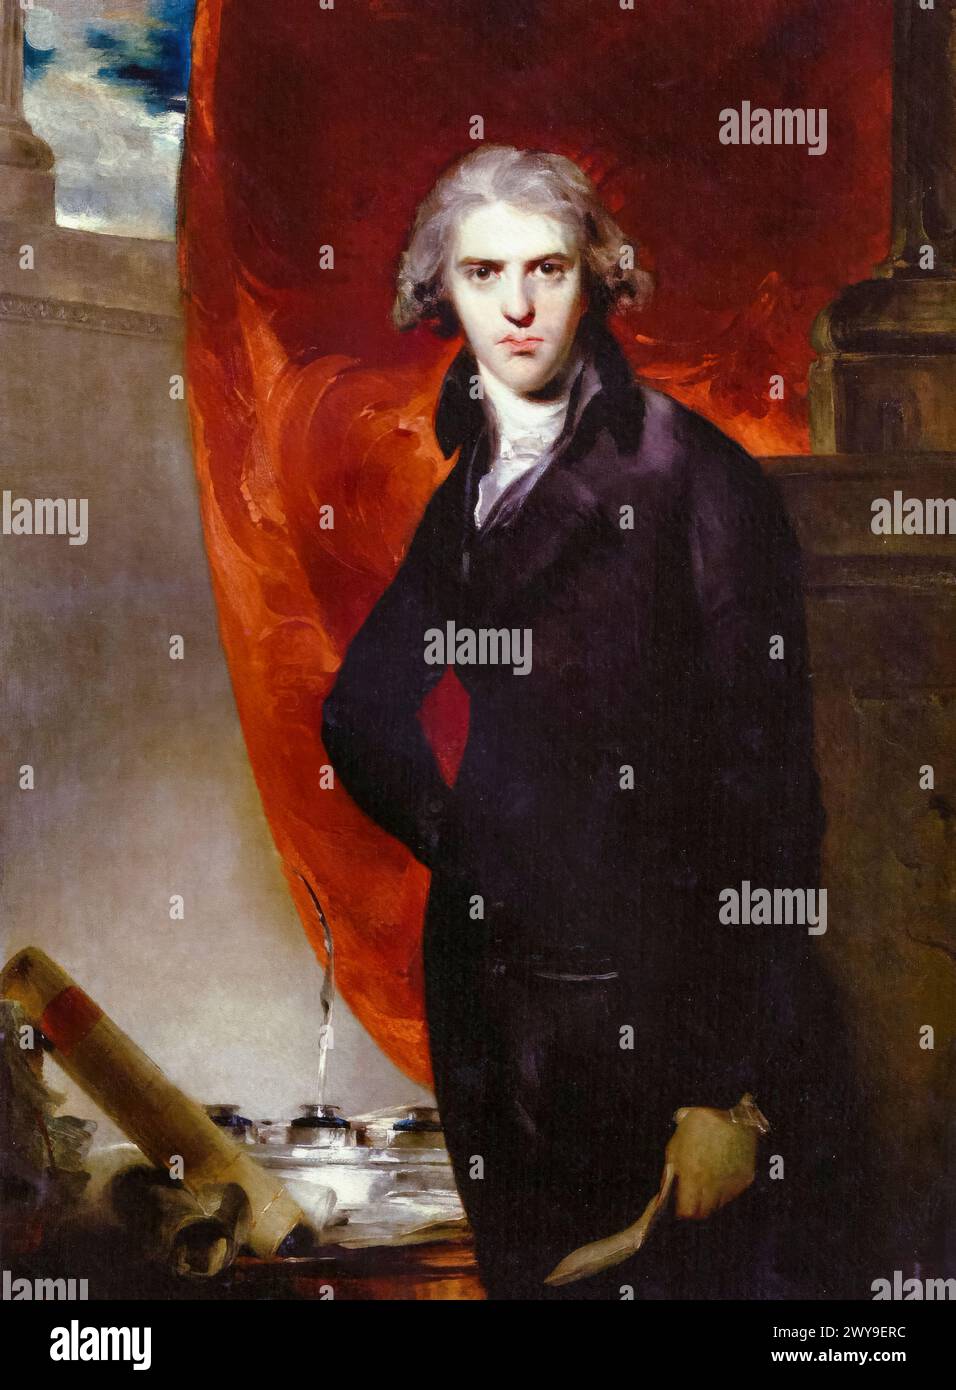 Robert Jenkinson, II conte di Liverpool (1770-1828), politico Tory e primo ministro del Regno Unito 1812-1827, ritratto a olio su tela di Sir Thomas Lawrence, 1793-1796 Foto Stock